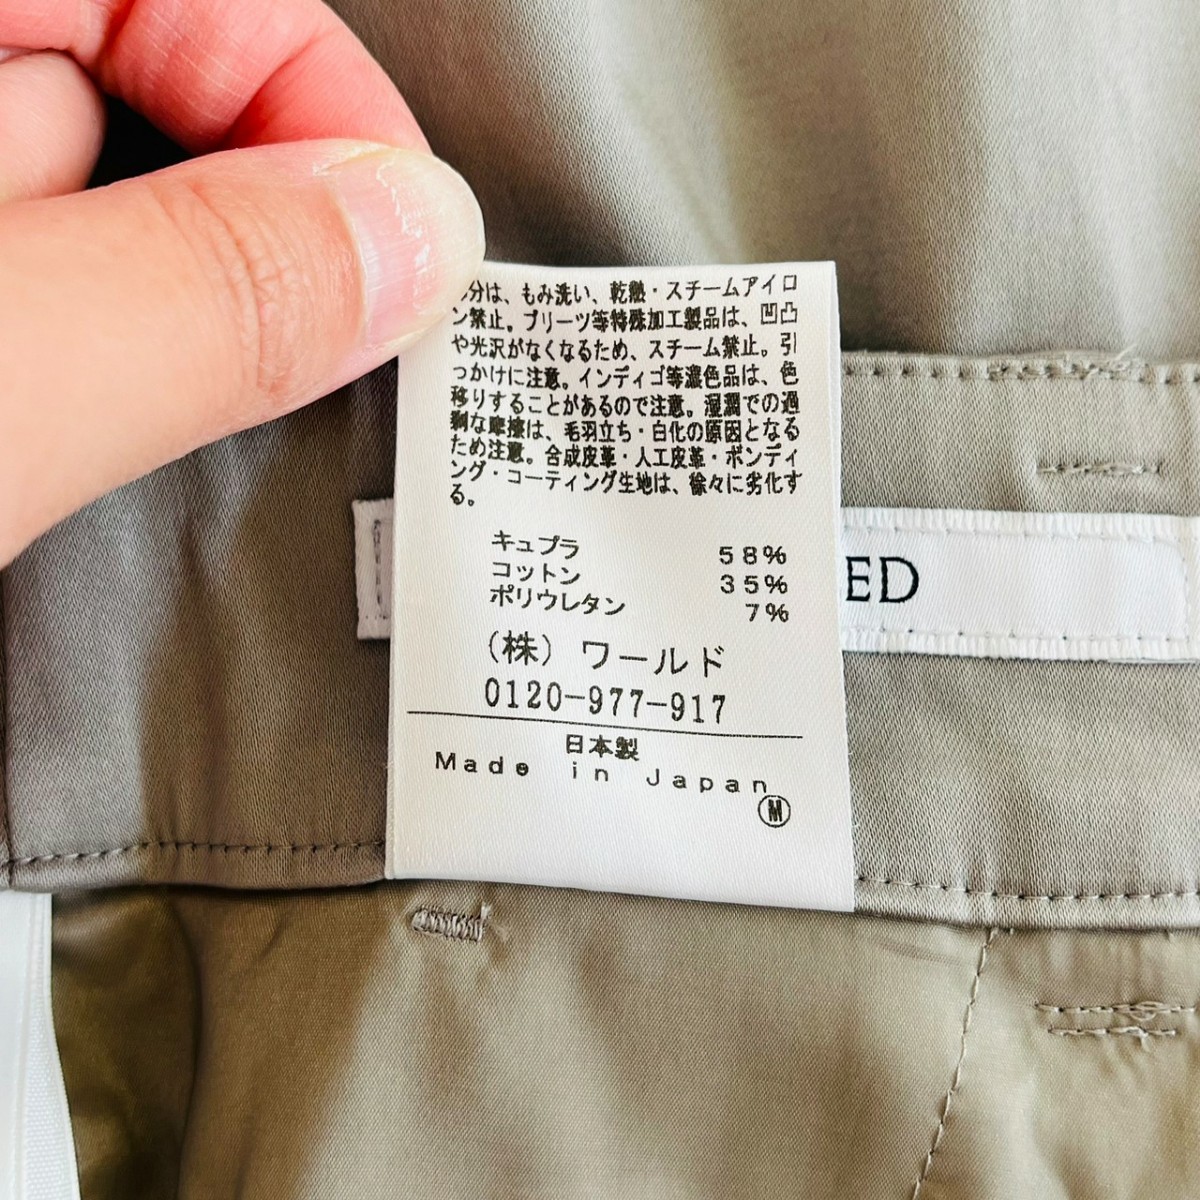 F8757cE UNTITLED Untitled конические брюки серый размер 1 (S~M ранг ) женский сделано в Японии красивый . простой тонкий весна предмет world 